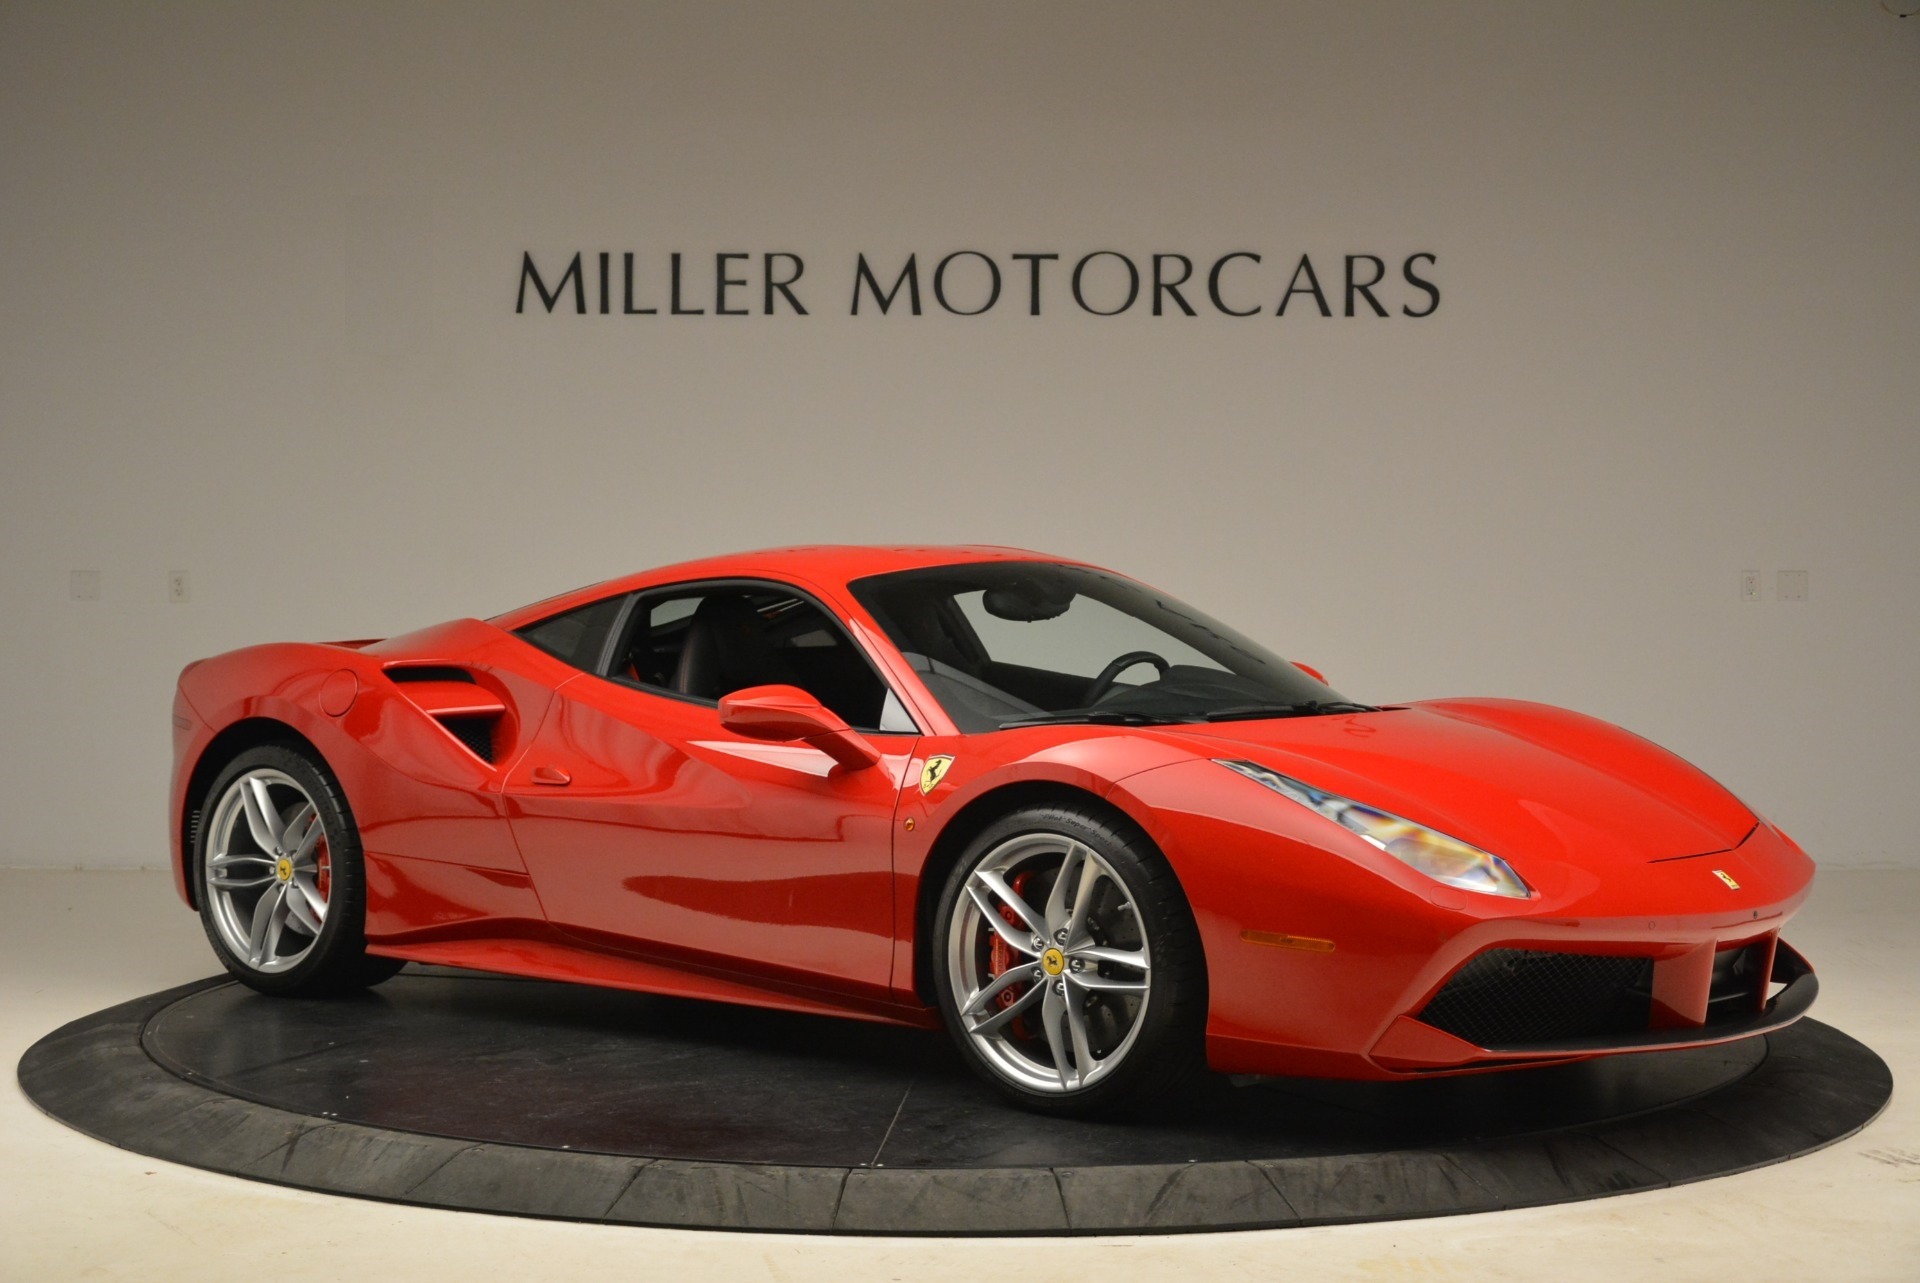 PreOwned 2016 Ferrari 488 GTB For Sale () Miller Motorcars Stock 4463